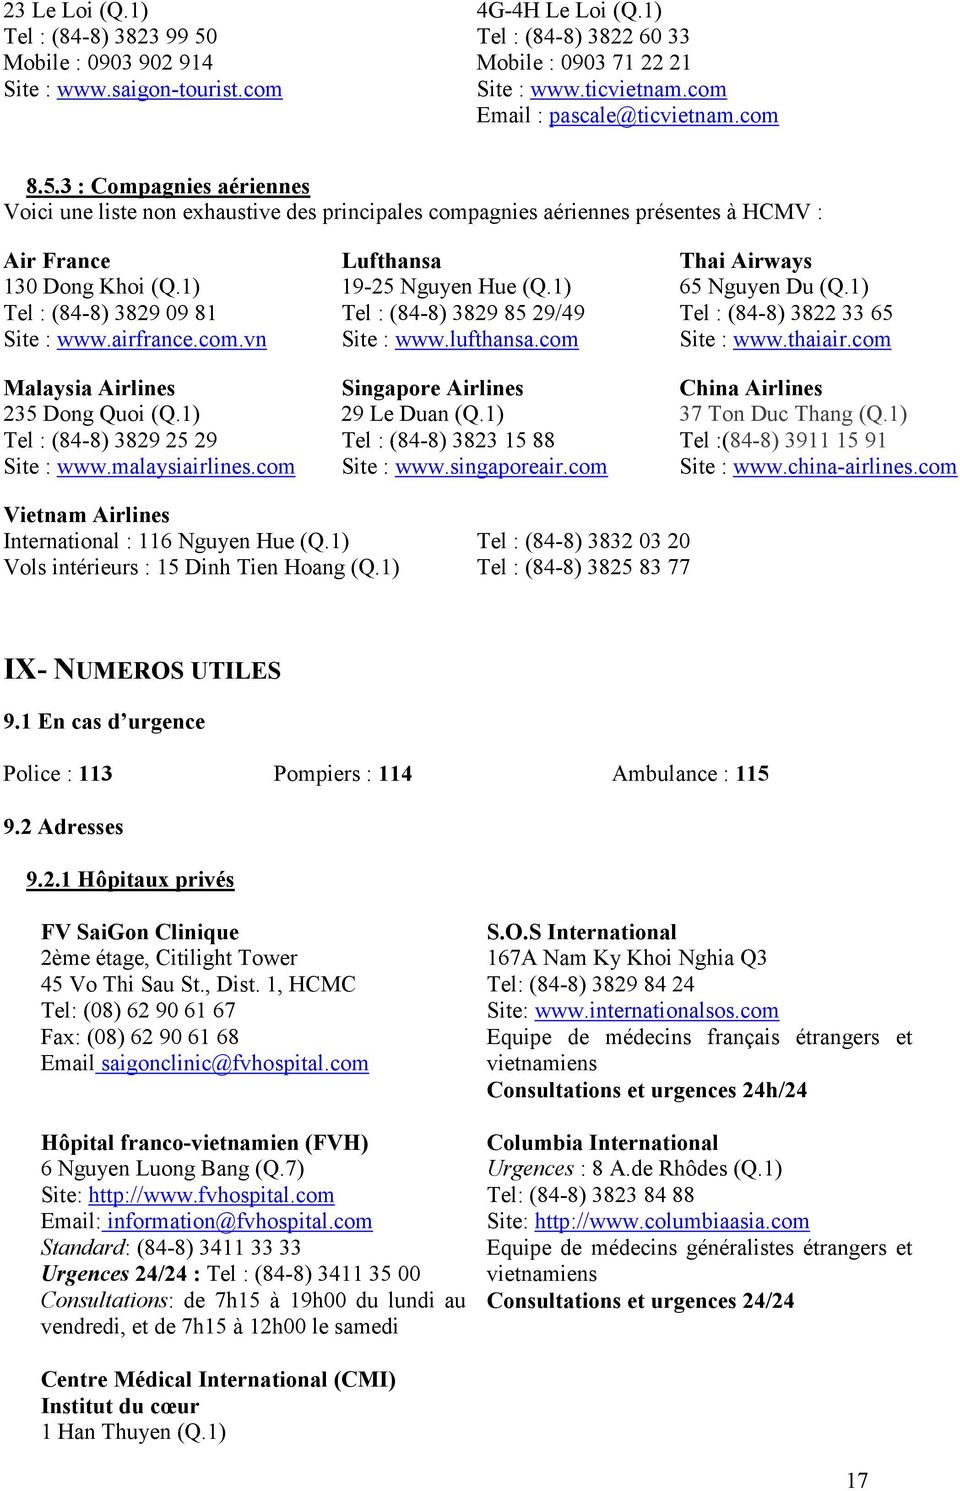 3 : Compagnies aériennes Voici une liste non exhaustive des principales compagnies aériennes présentes à HCMV : Air France Lufthansa Thai Airways 130 Dong Khoi (Q.1) 19-25 Nguyen Hue (Q.